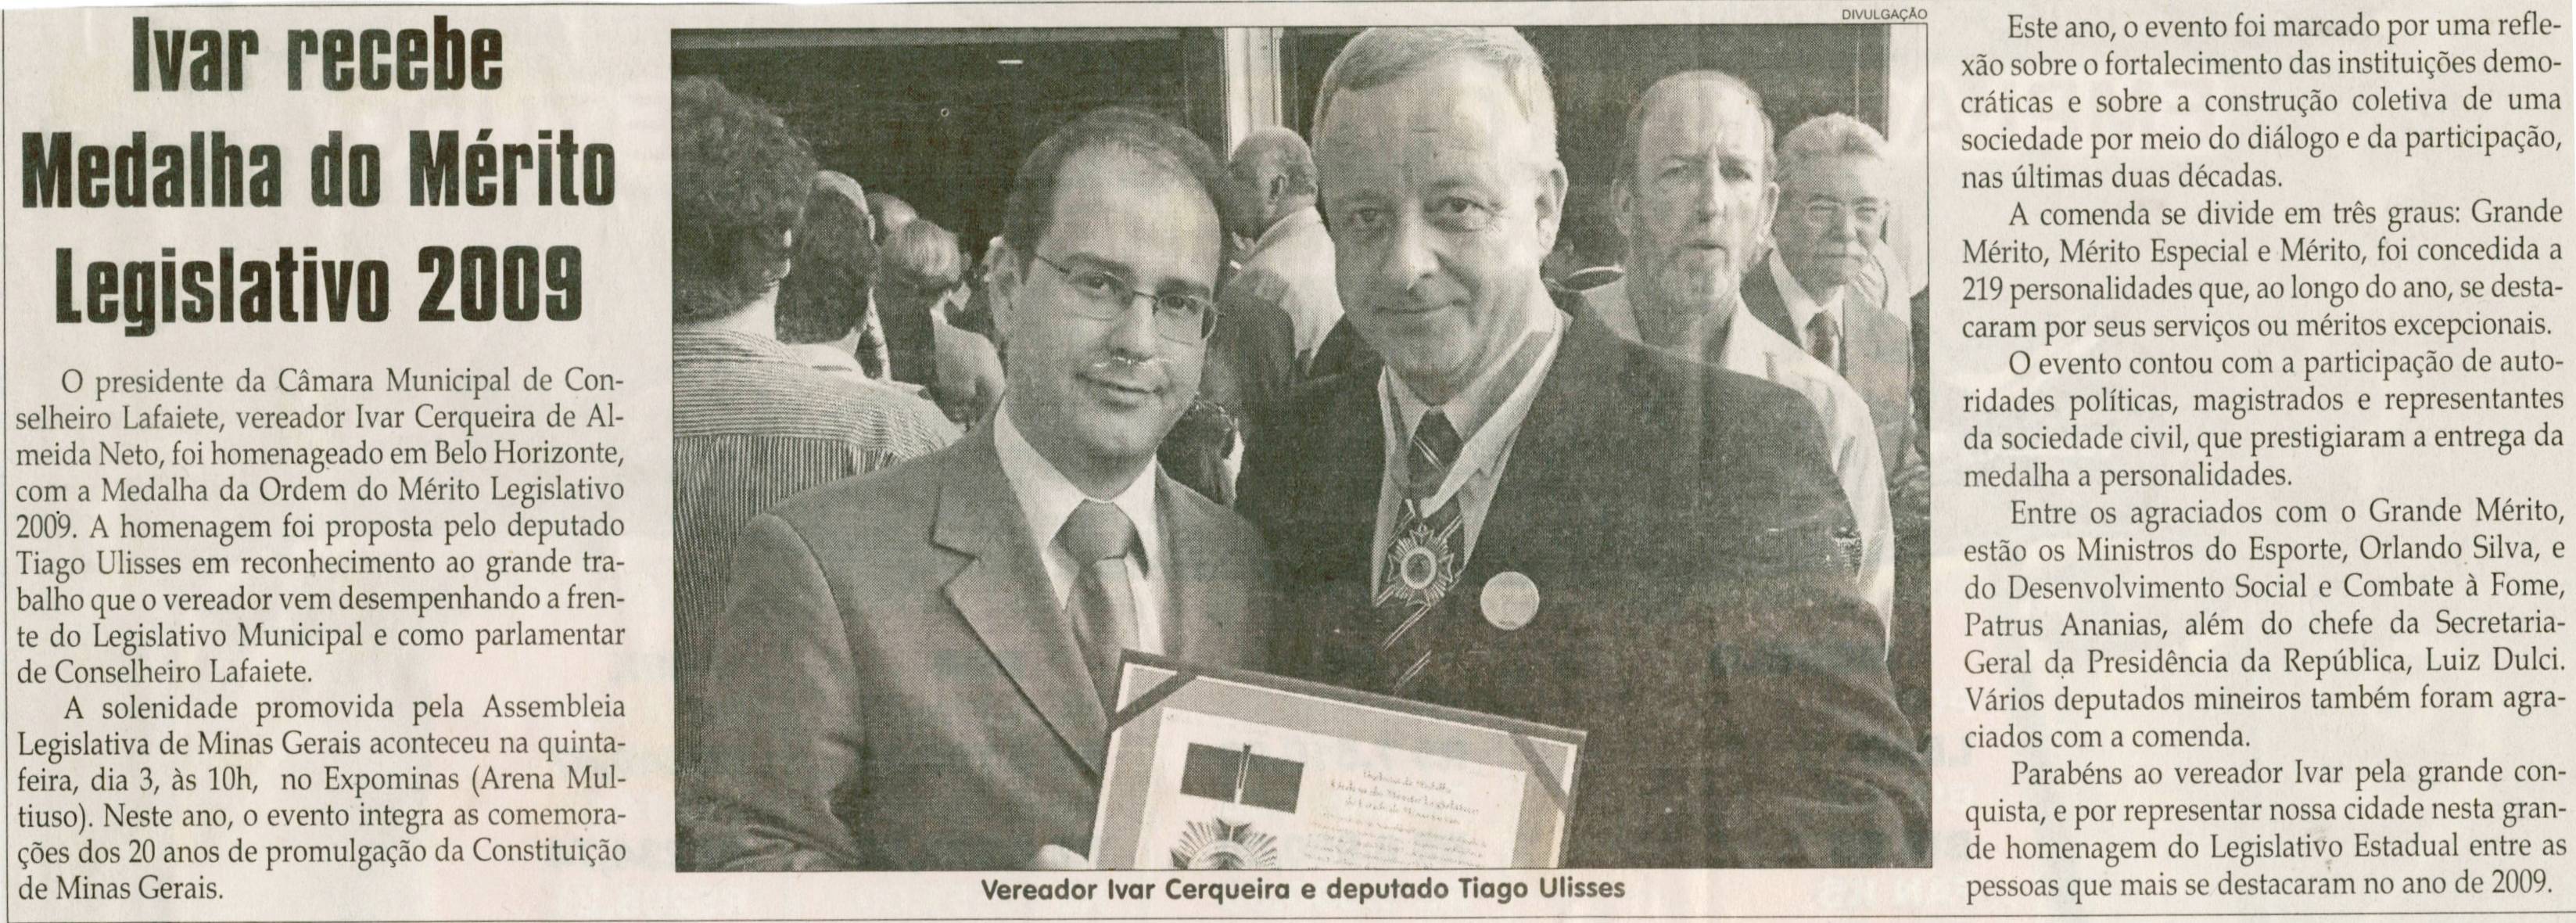 Ivar recebe medalha do Mérito Legislativo 2009. Jornal Correio da Cidade, Conselheiro Lafaiete, 12 dez. 2009, p. 04.